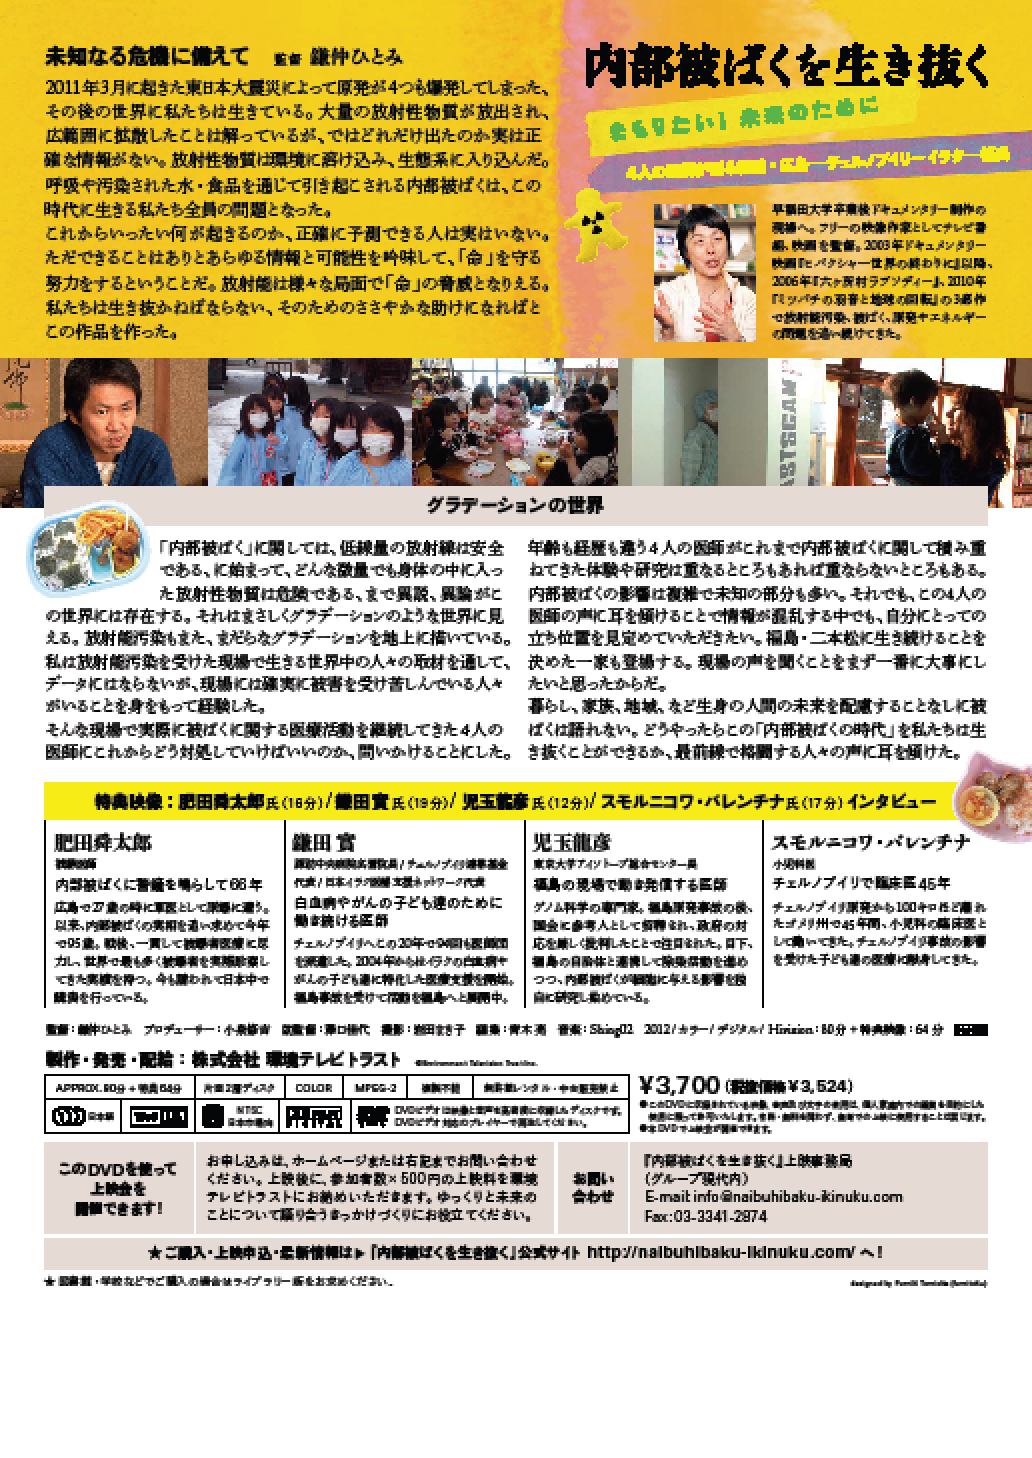 【ご案内】10月20日-21日京都市民測定所まつりを開催します。みんなきてね。_c0233009_10461030.png